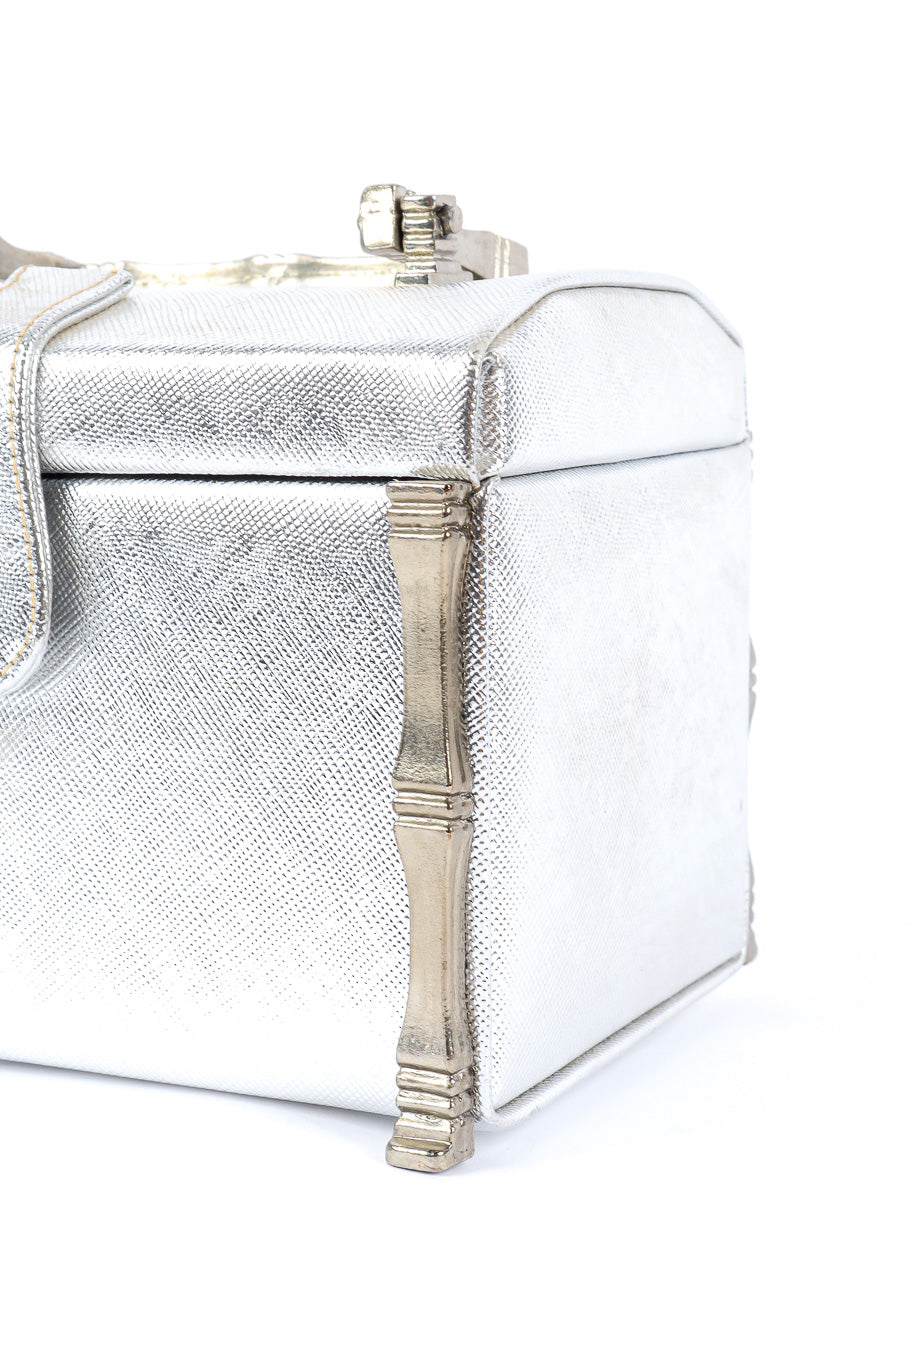 Lewis silver leather mini box bag details @recessla